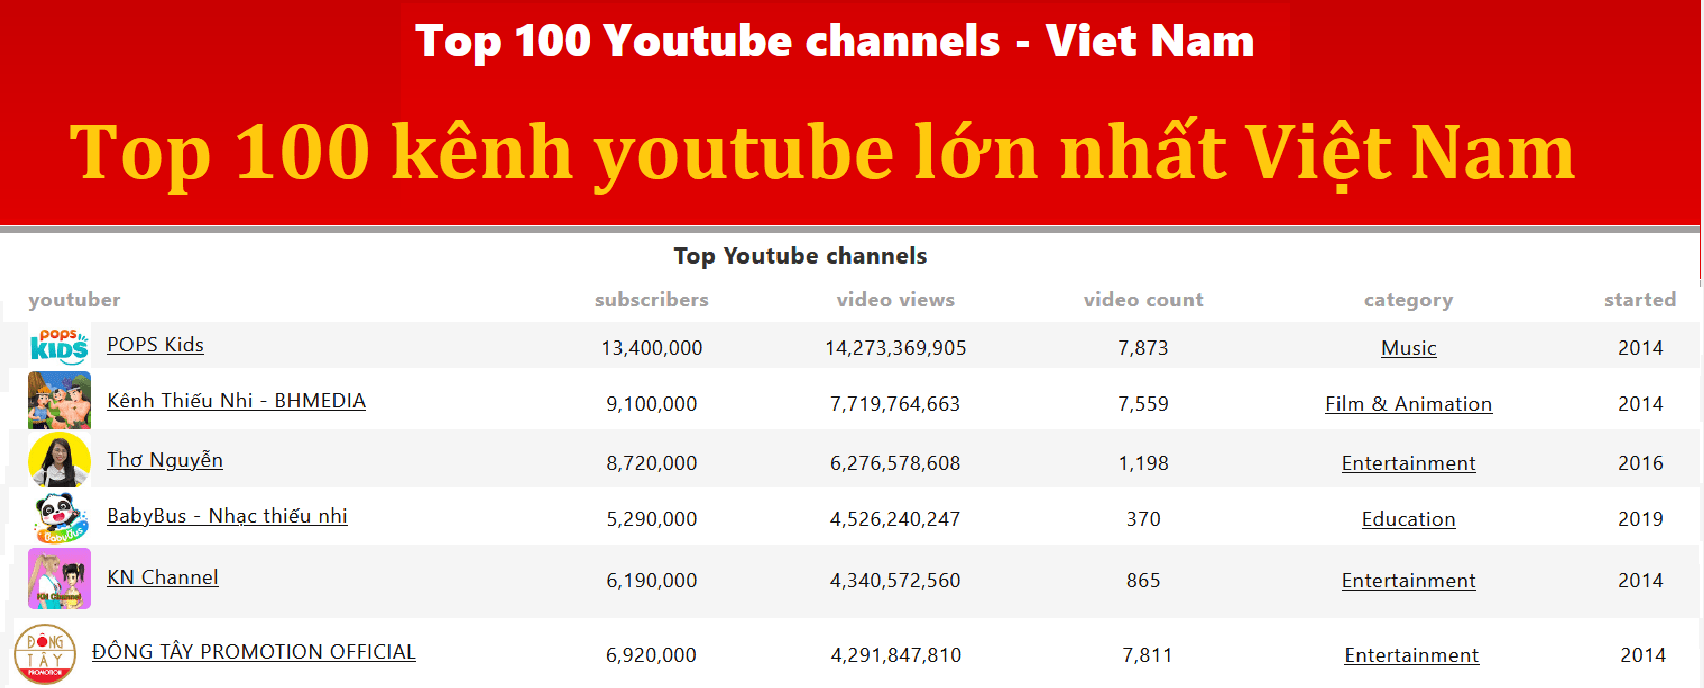 Thống kê youtube Việt Nam - 100 youtuber nổi tiếng nhất việt nam - 100 kênh youtube nhiều đăng ký nhất Việt Nam - top 10 kênh youtube có view cao nhất - top 10 kênh có sub cao nhất - Dịch vụ quảng cáo trực tuyến - Công ty quảng cáo trực tuyến Việt Nam